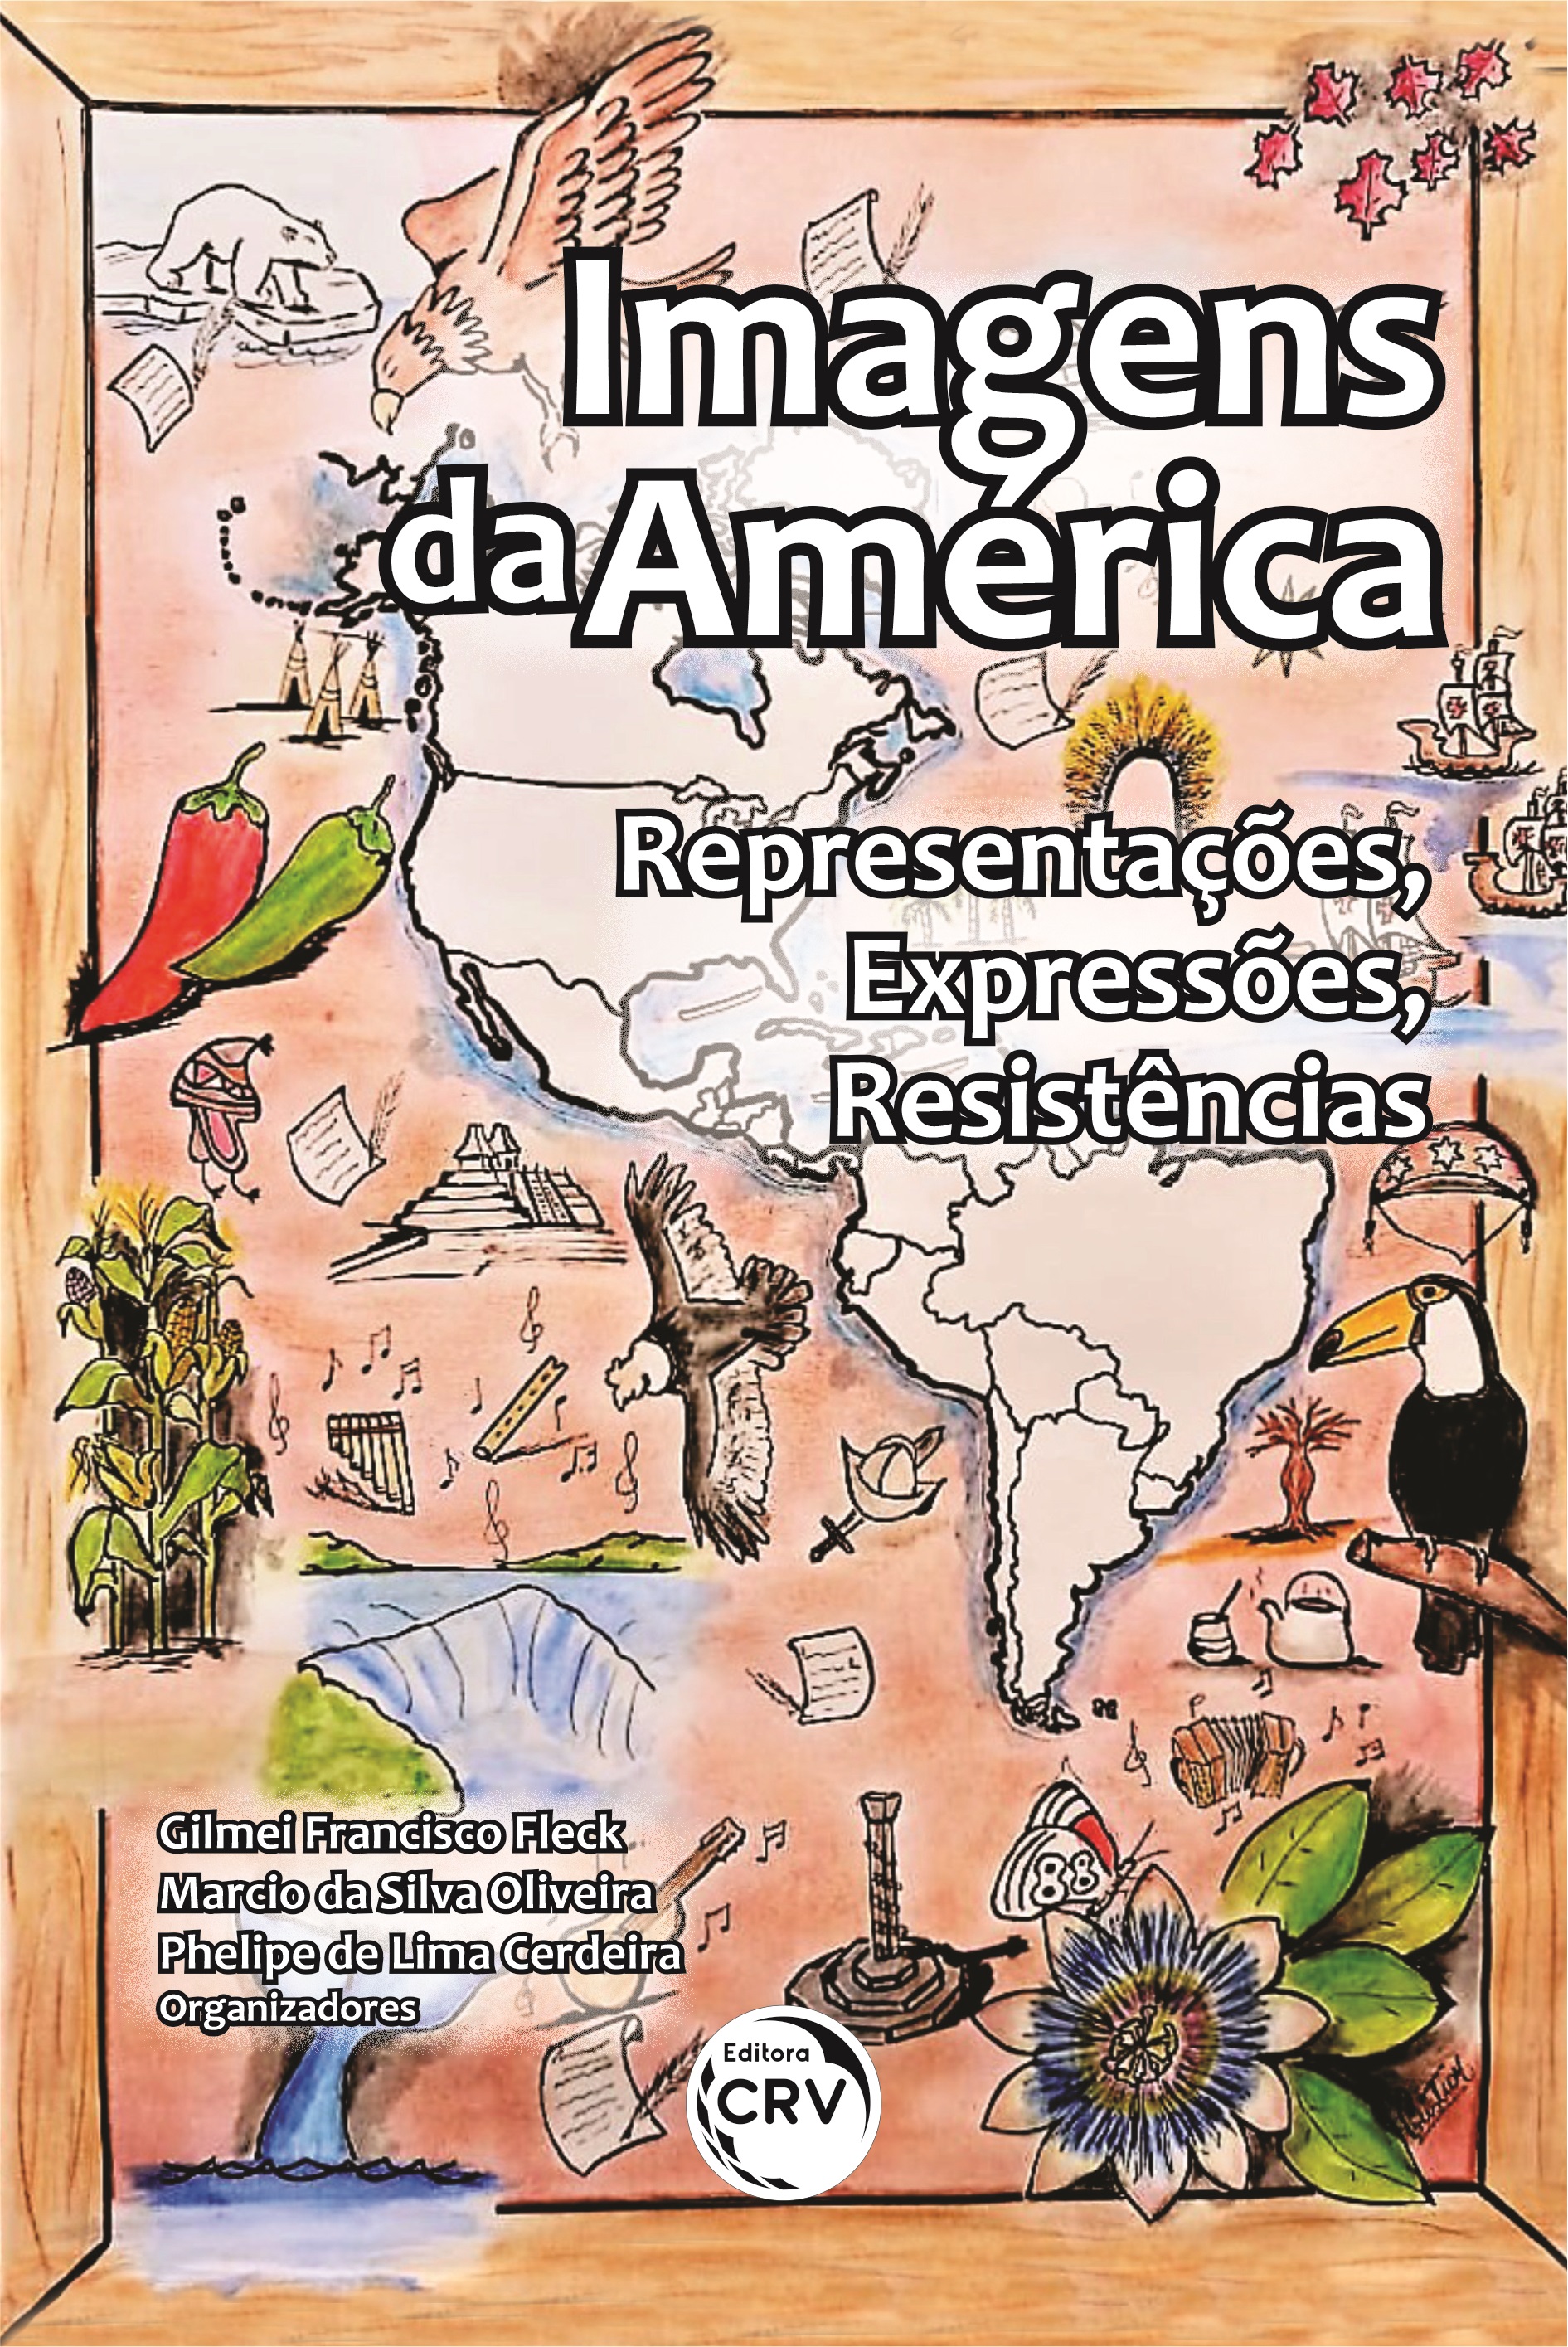 Revista Fecomércio PR - nº 118 by Silvia Lima - Issuu